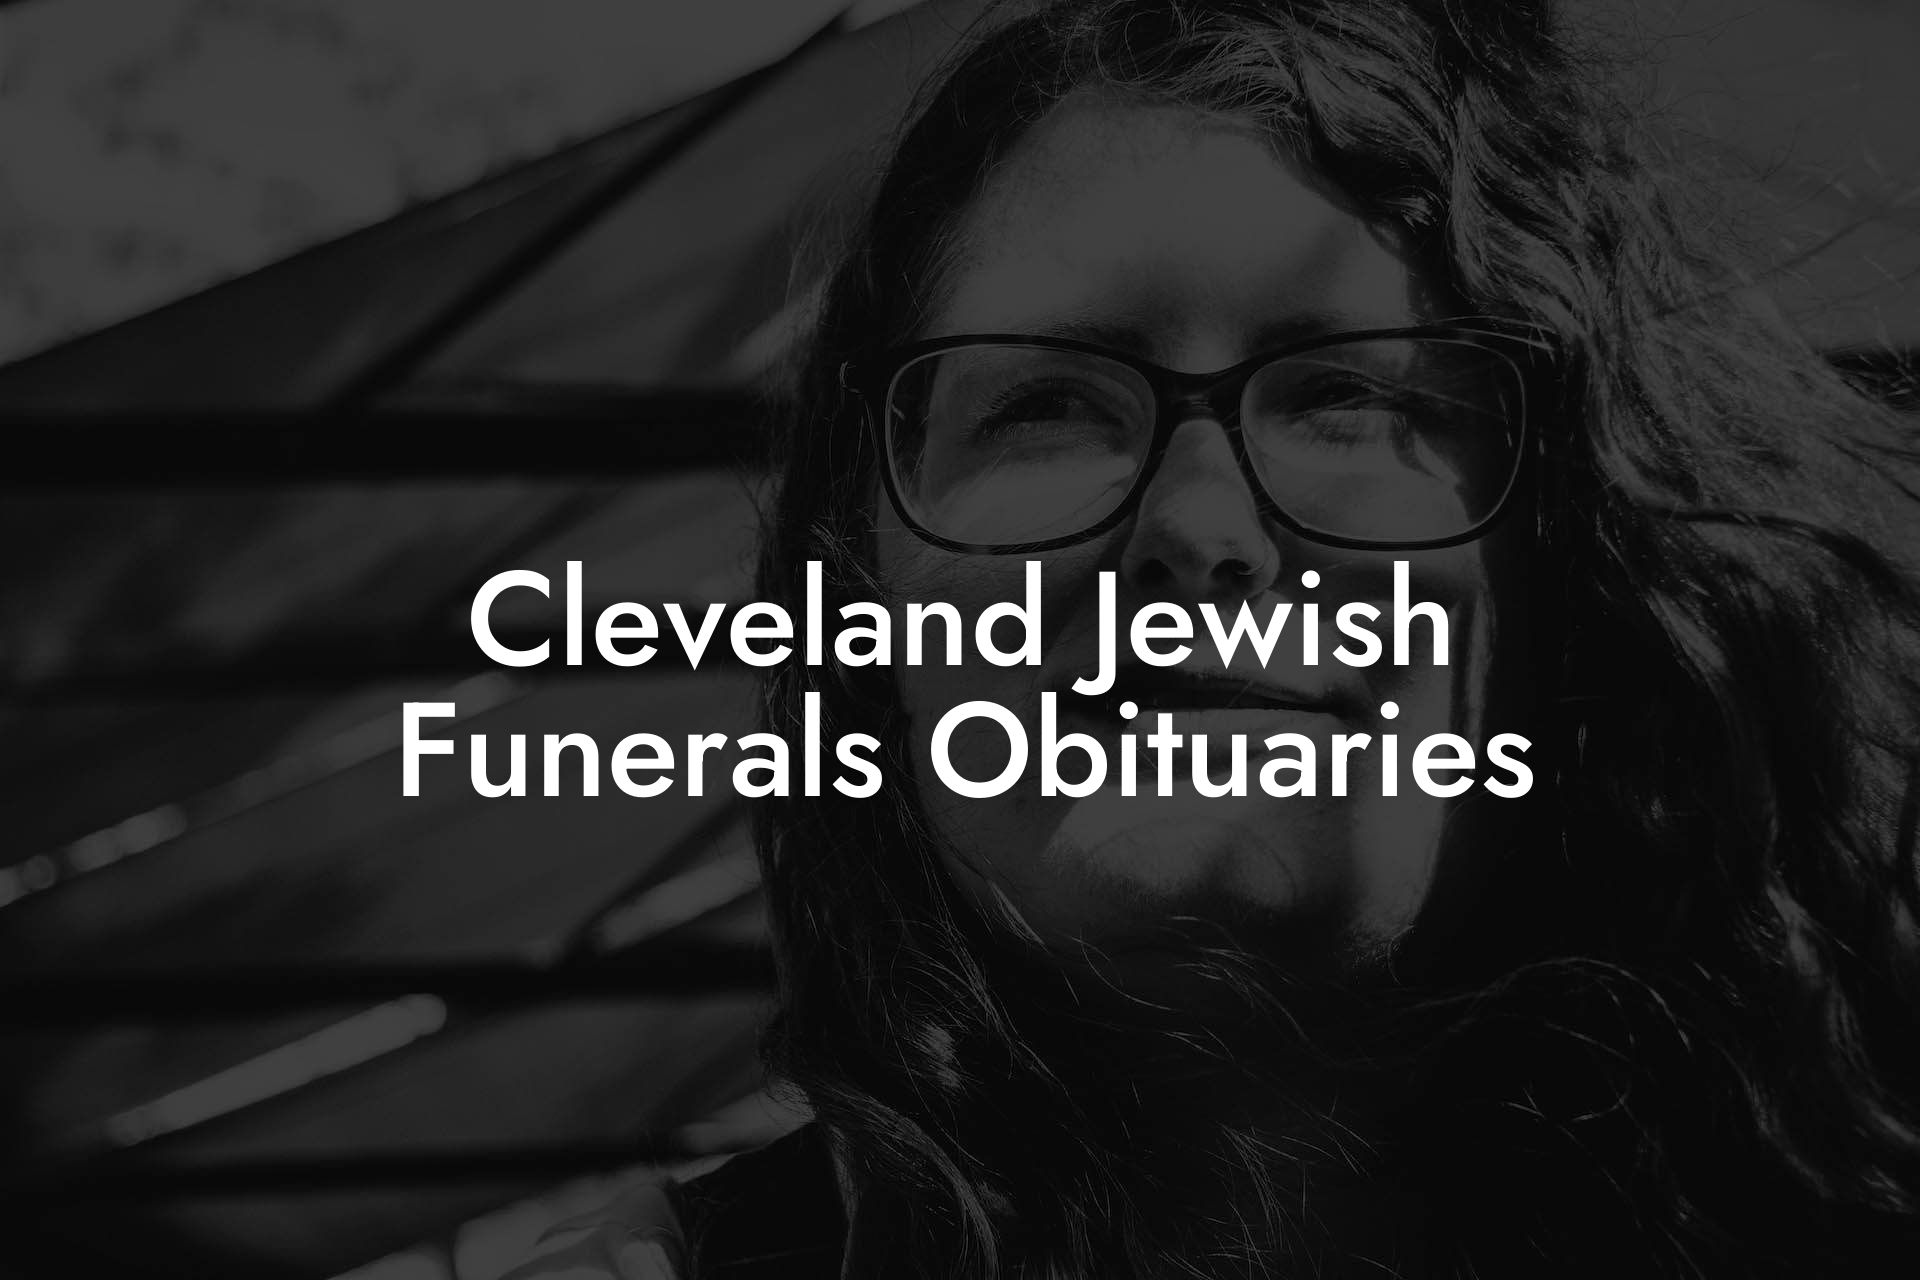 Cleveland Jewish Funerals Obituaries